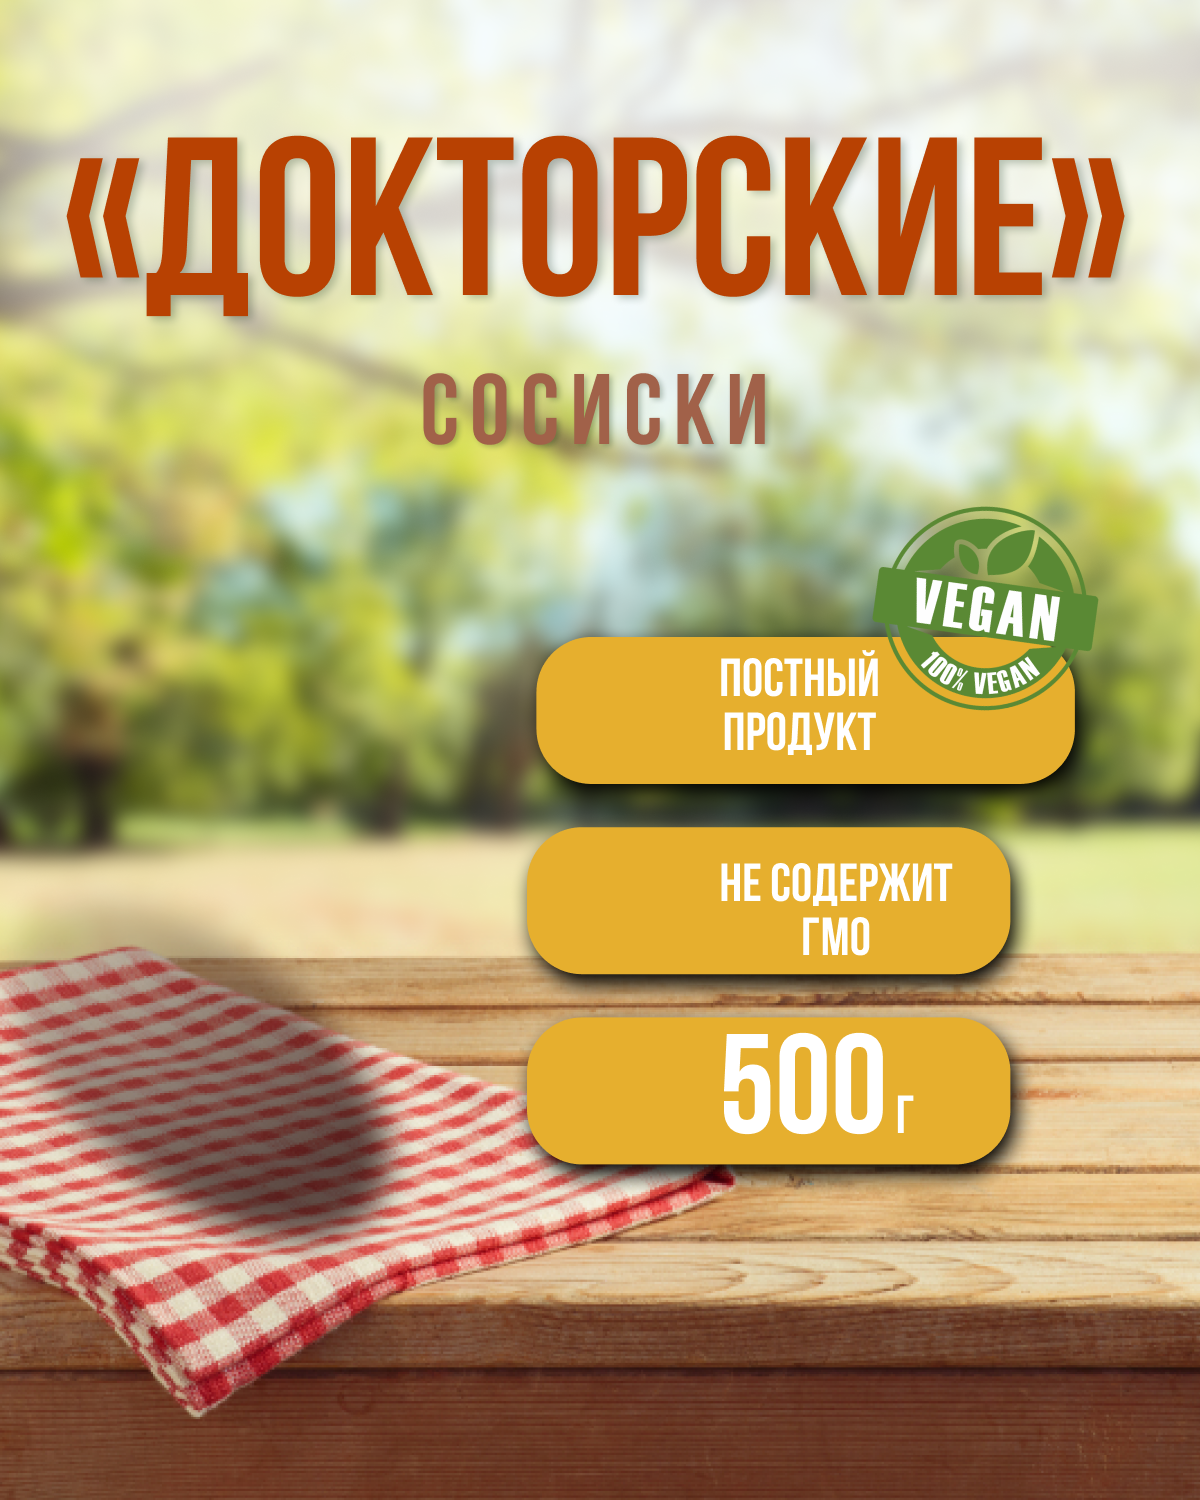 Сосиски пшеничные докторские (VEGO), 500 г